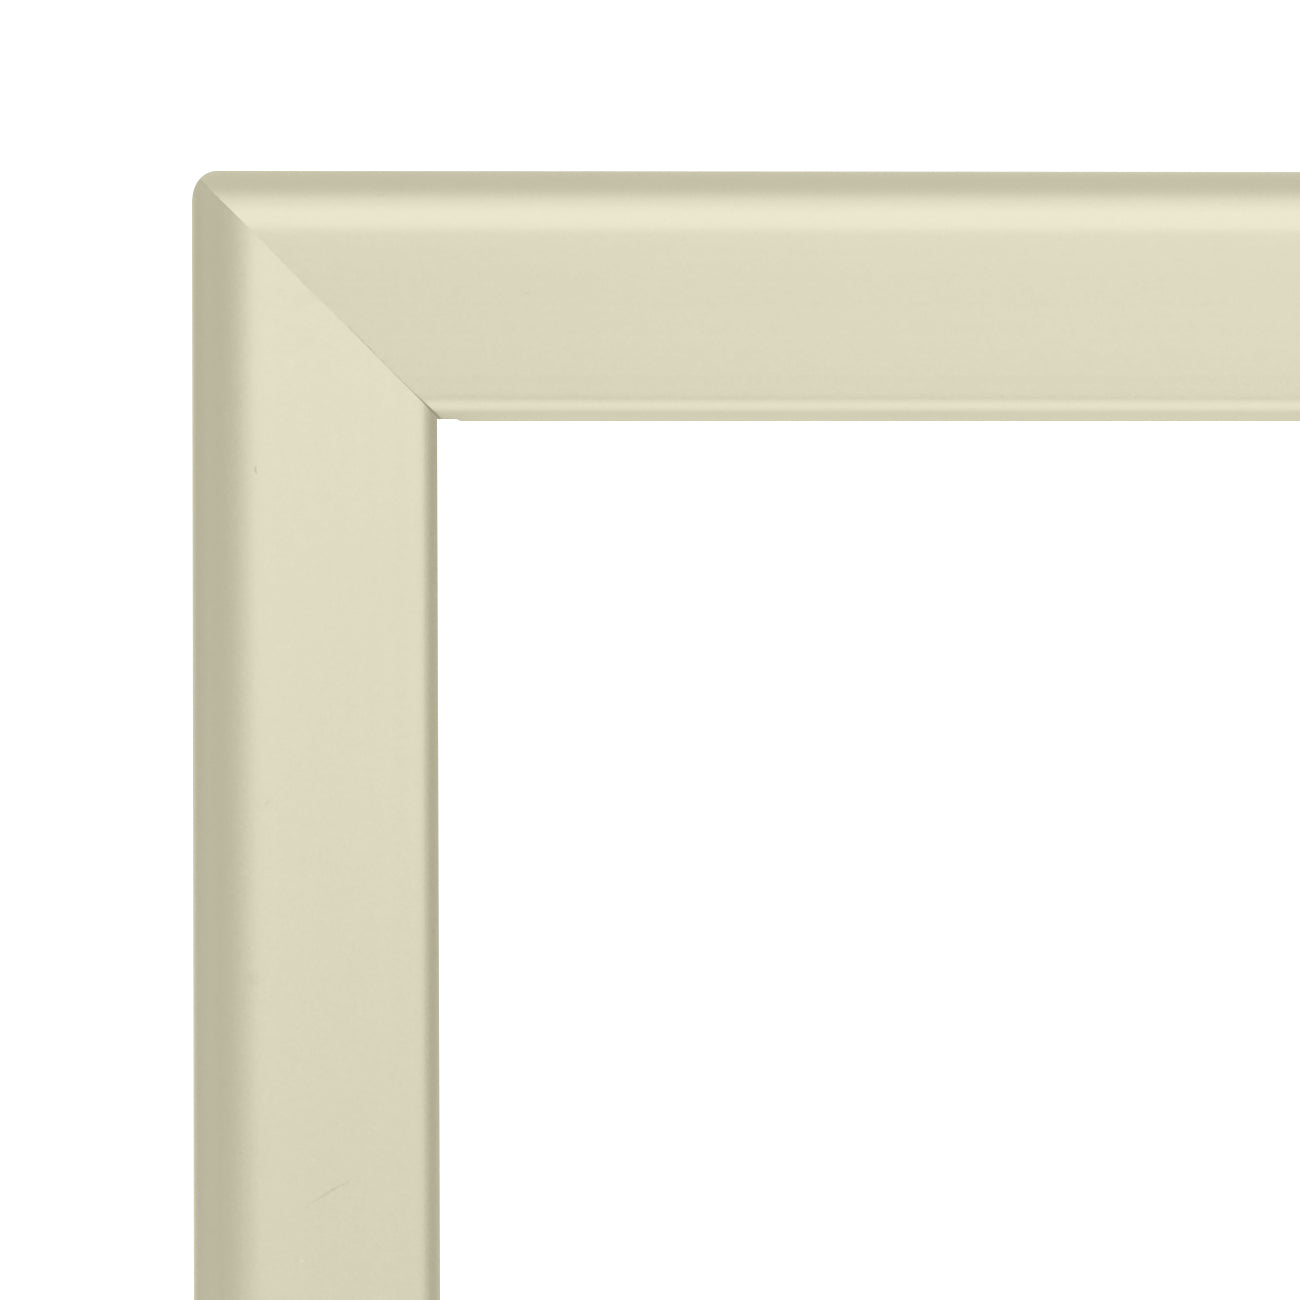 11x17 Cream SnapeZo® Snap Frame - 1.25" Profile